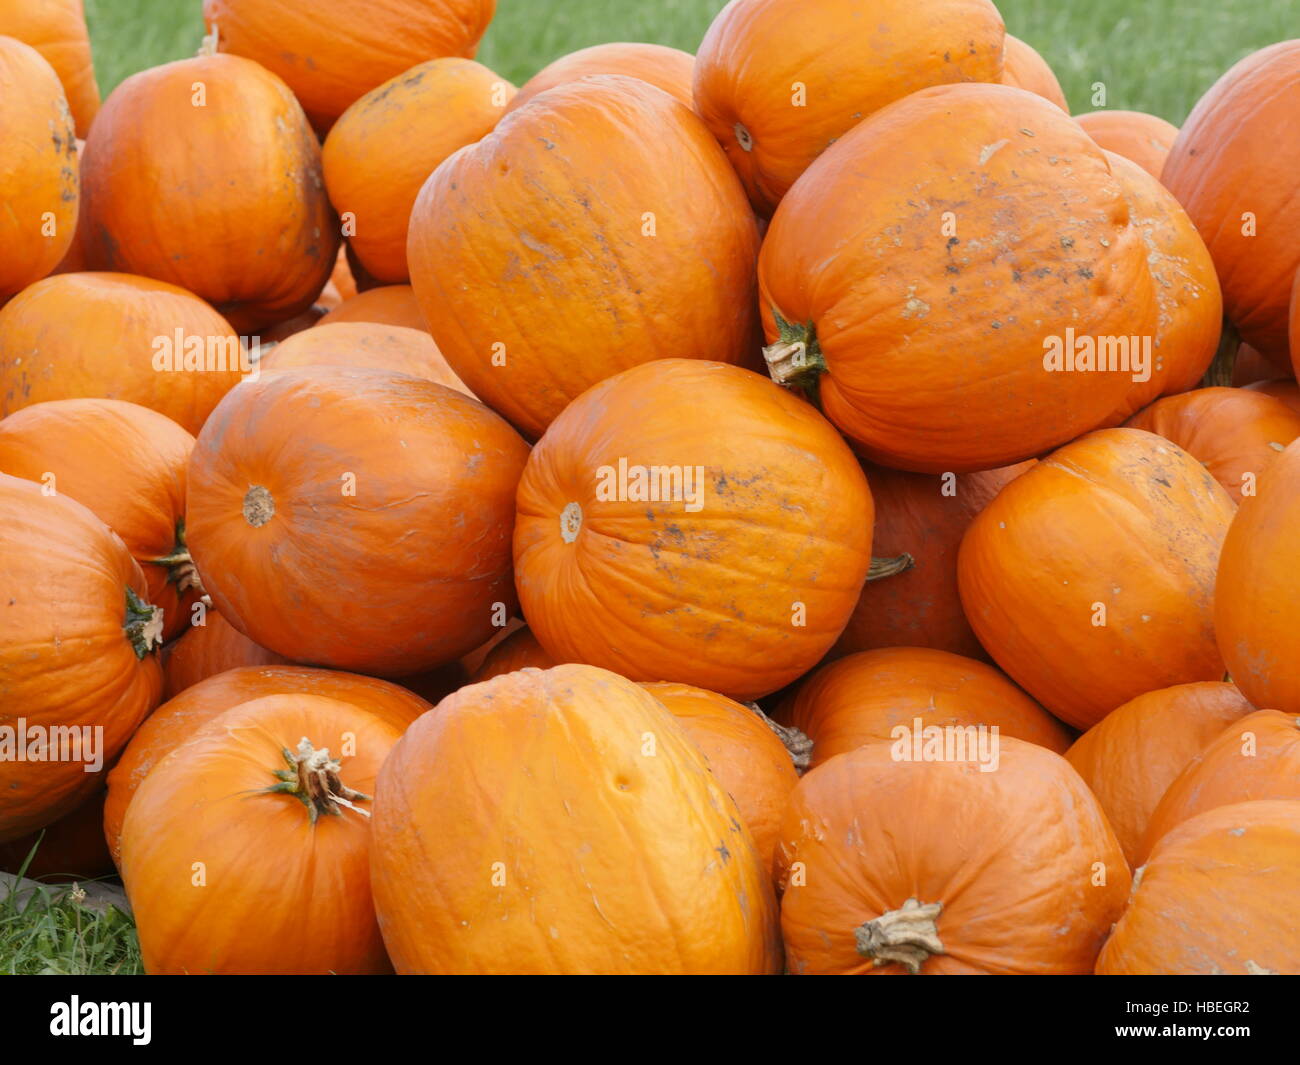 Orange Helloween pumpkins outdoors Stock Photo